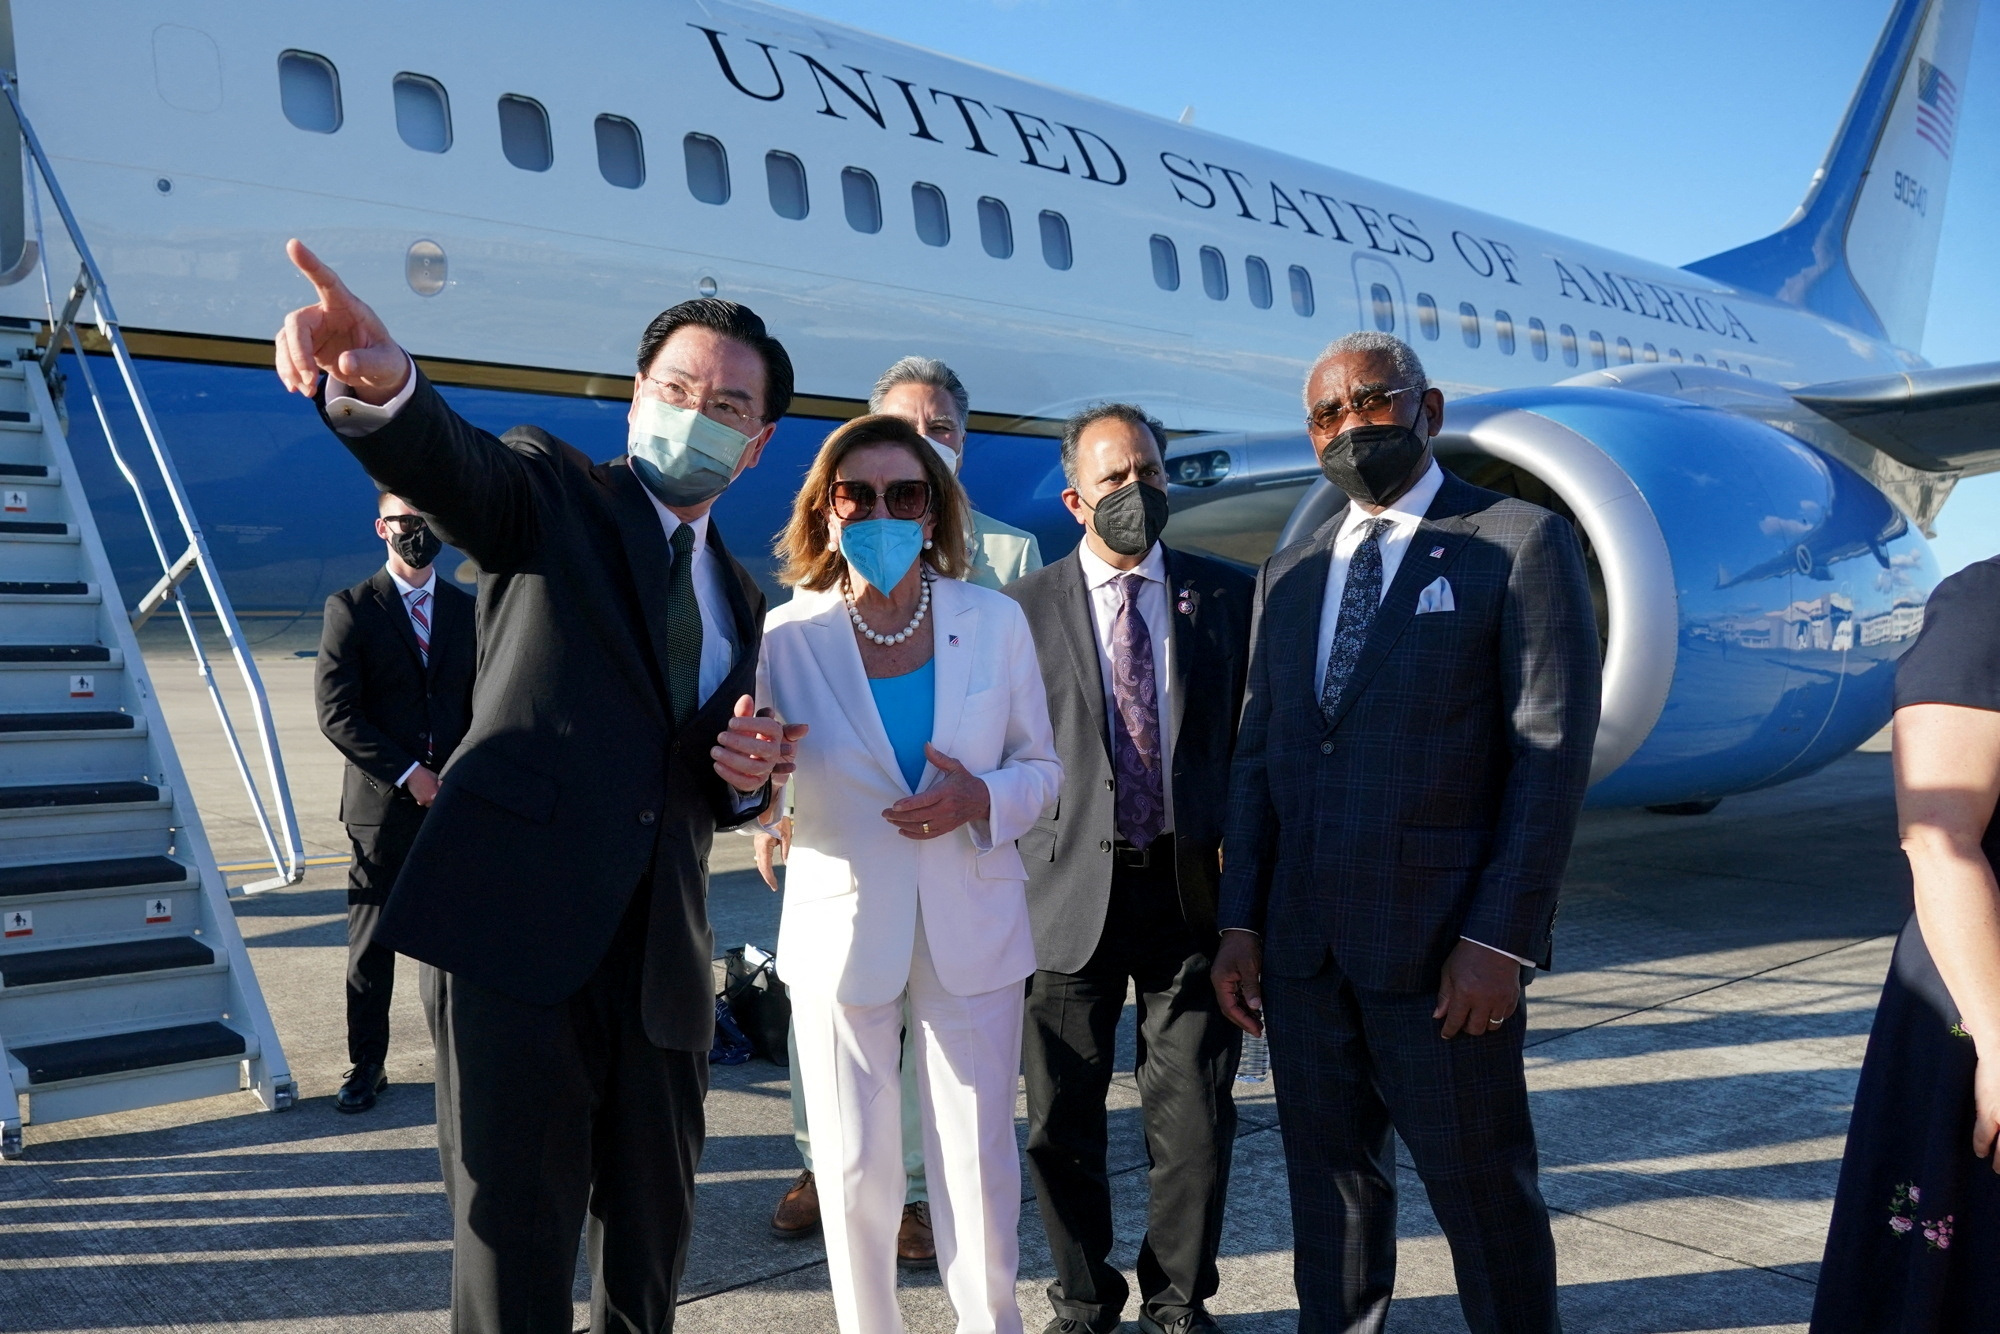 PHOTO DE DOSSIER: La présidente de la Chambre des États-Unis, Nancy Pelosi, s'entretient avec le ministre des Affaires étrangères de Taïwan, Joseph Wu, avant de monter à bord d'un avion à l'aéroport de Taipei Songshan à Taipei, Taïwan, le 3 août 2022 PAR UN TIERS.  NE PAS ENREGISTRER.  AUCUN FICHIER./Fichier Photo